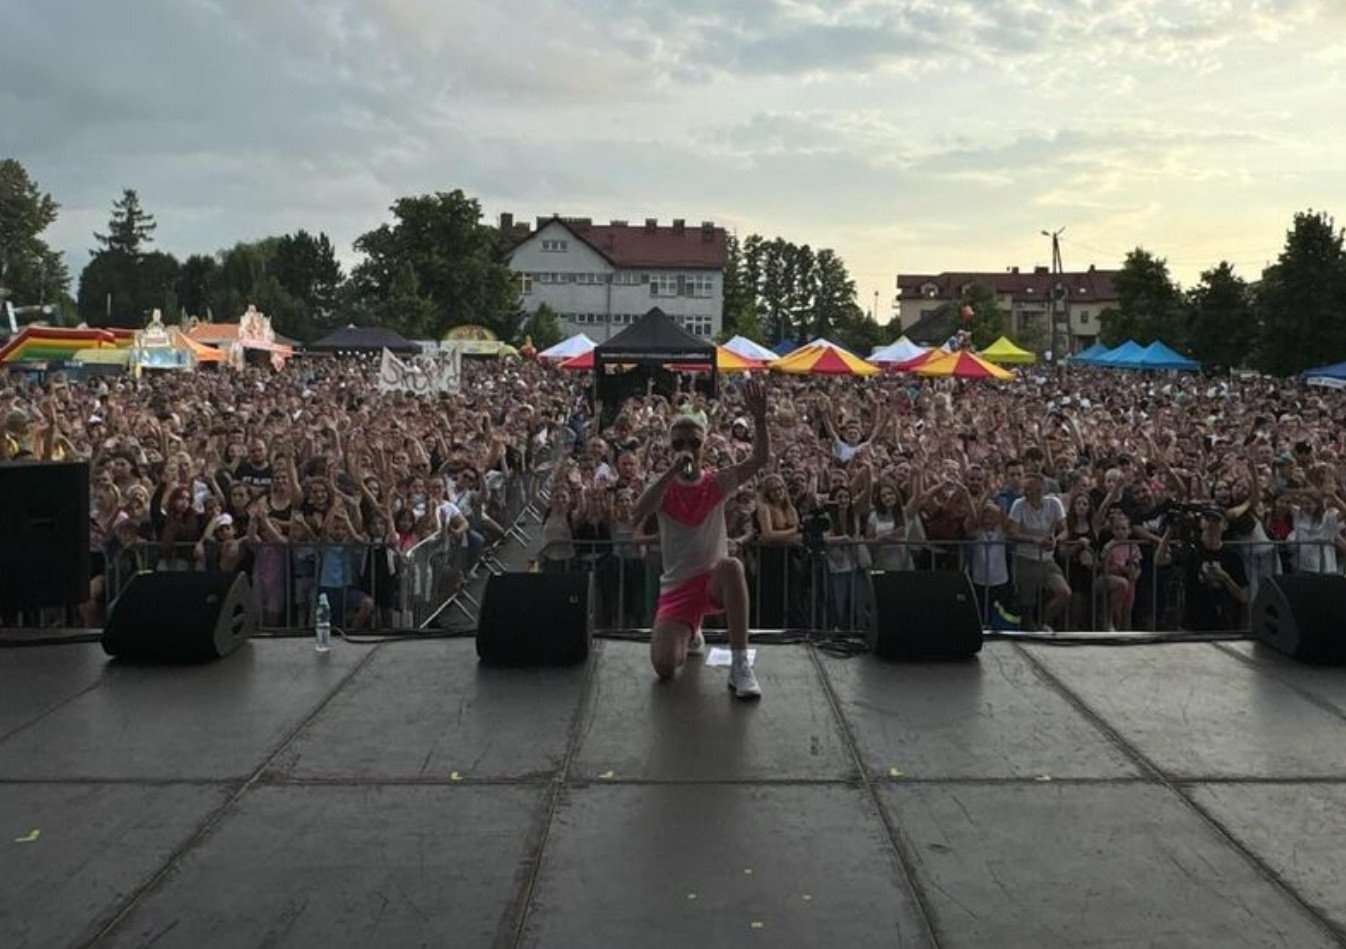 Woners  skradł show w Grębowie! Tłumy na koncercie młodego wokalisty disco!
